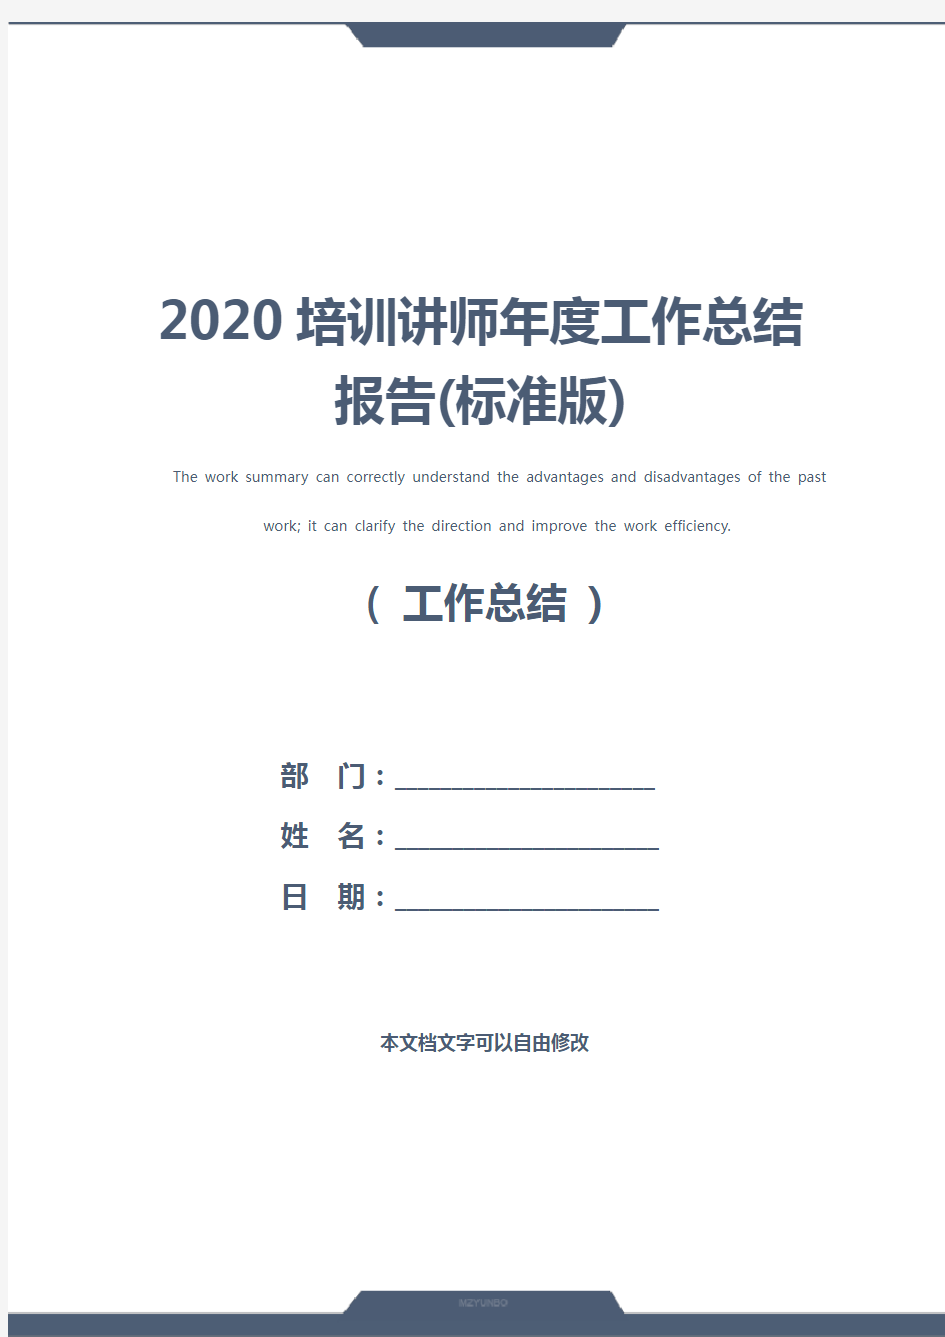 2020培训讲师年度工作总结报告(标准版)